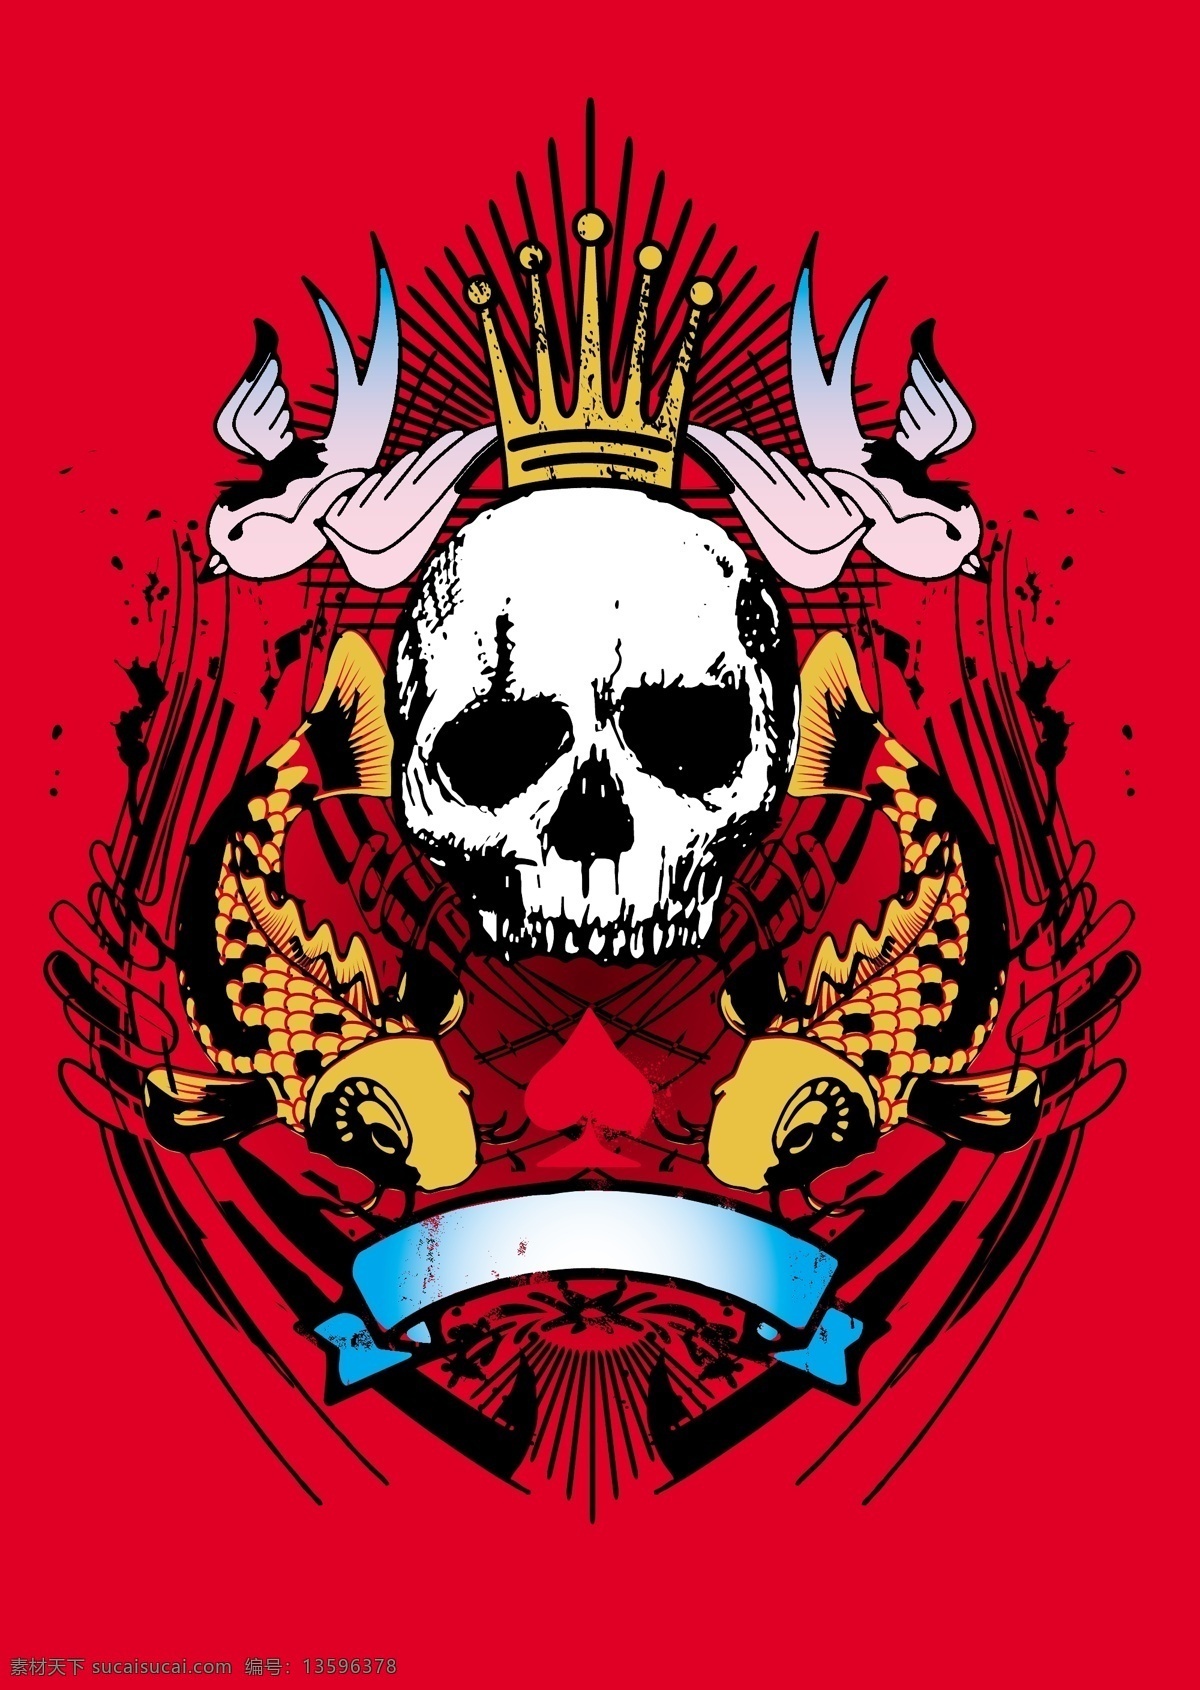 恐怖 骷髅 头 背景 鱼 鸟 皇冠 骷髅头 图案 纹身 t恤 印花 印花图案 底纹边框 矢量素材 红色